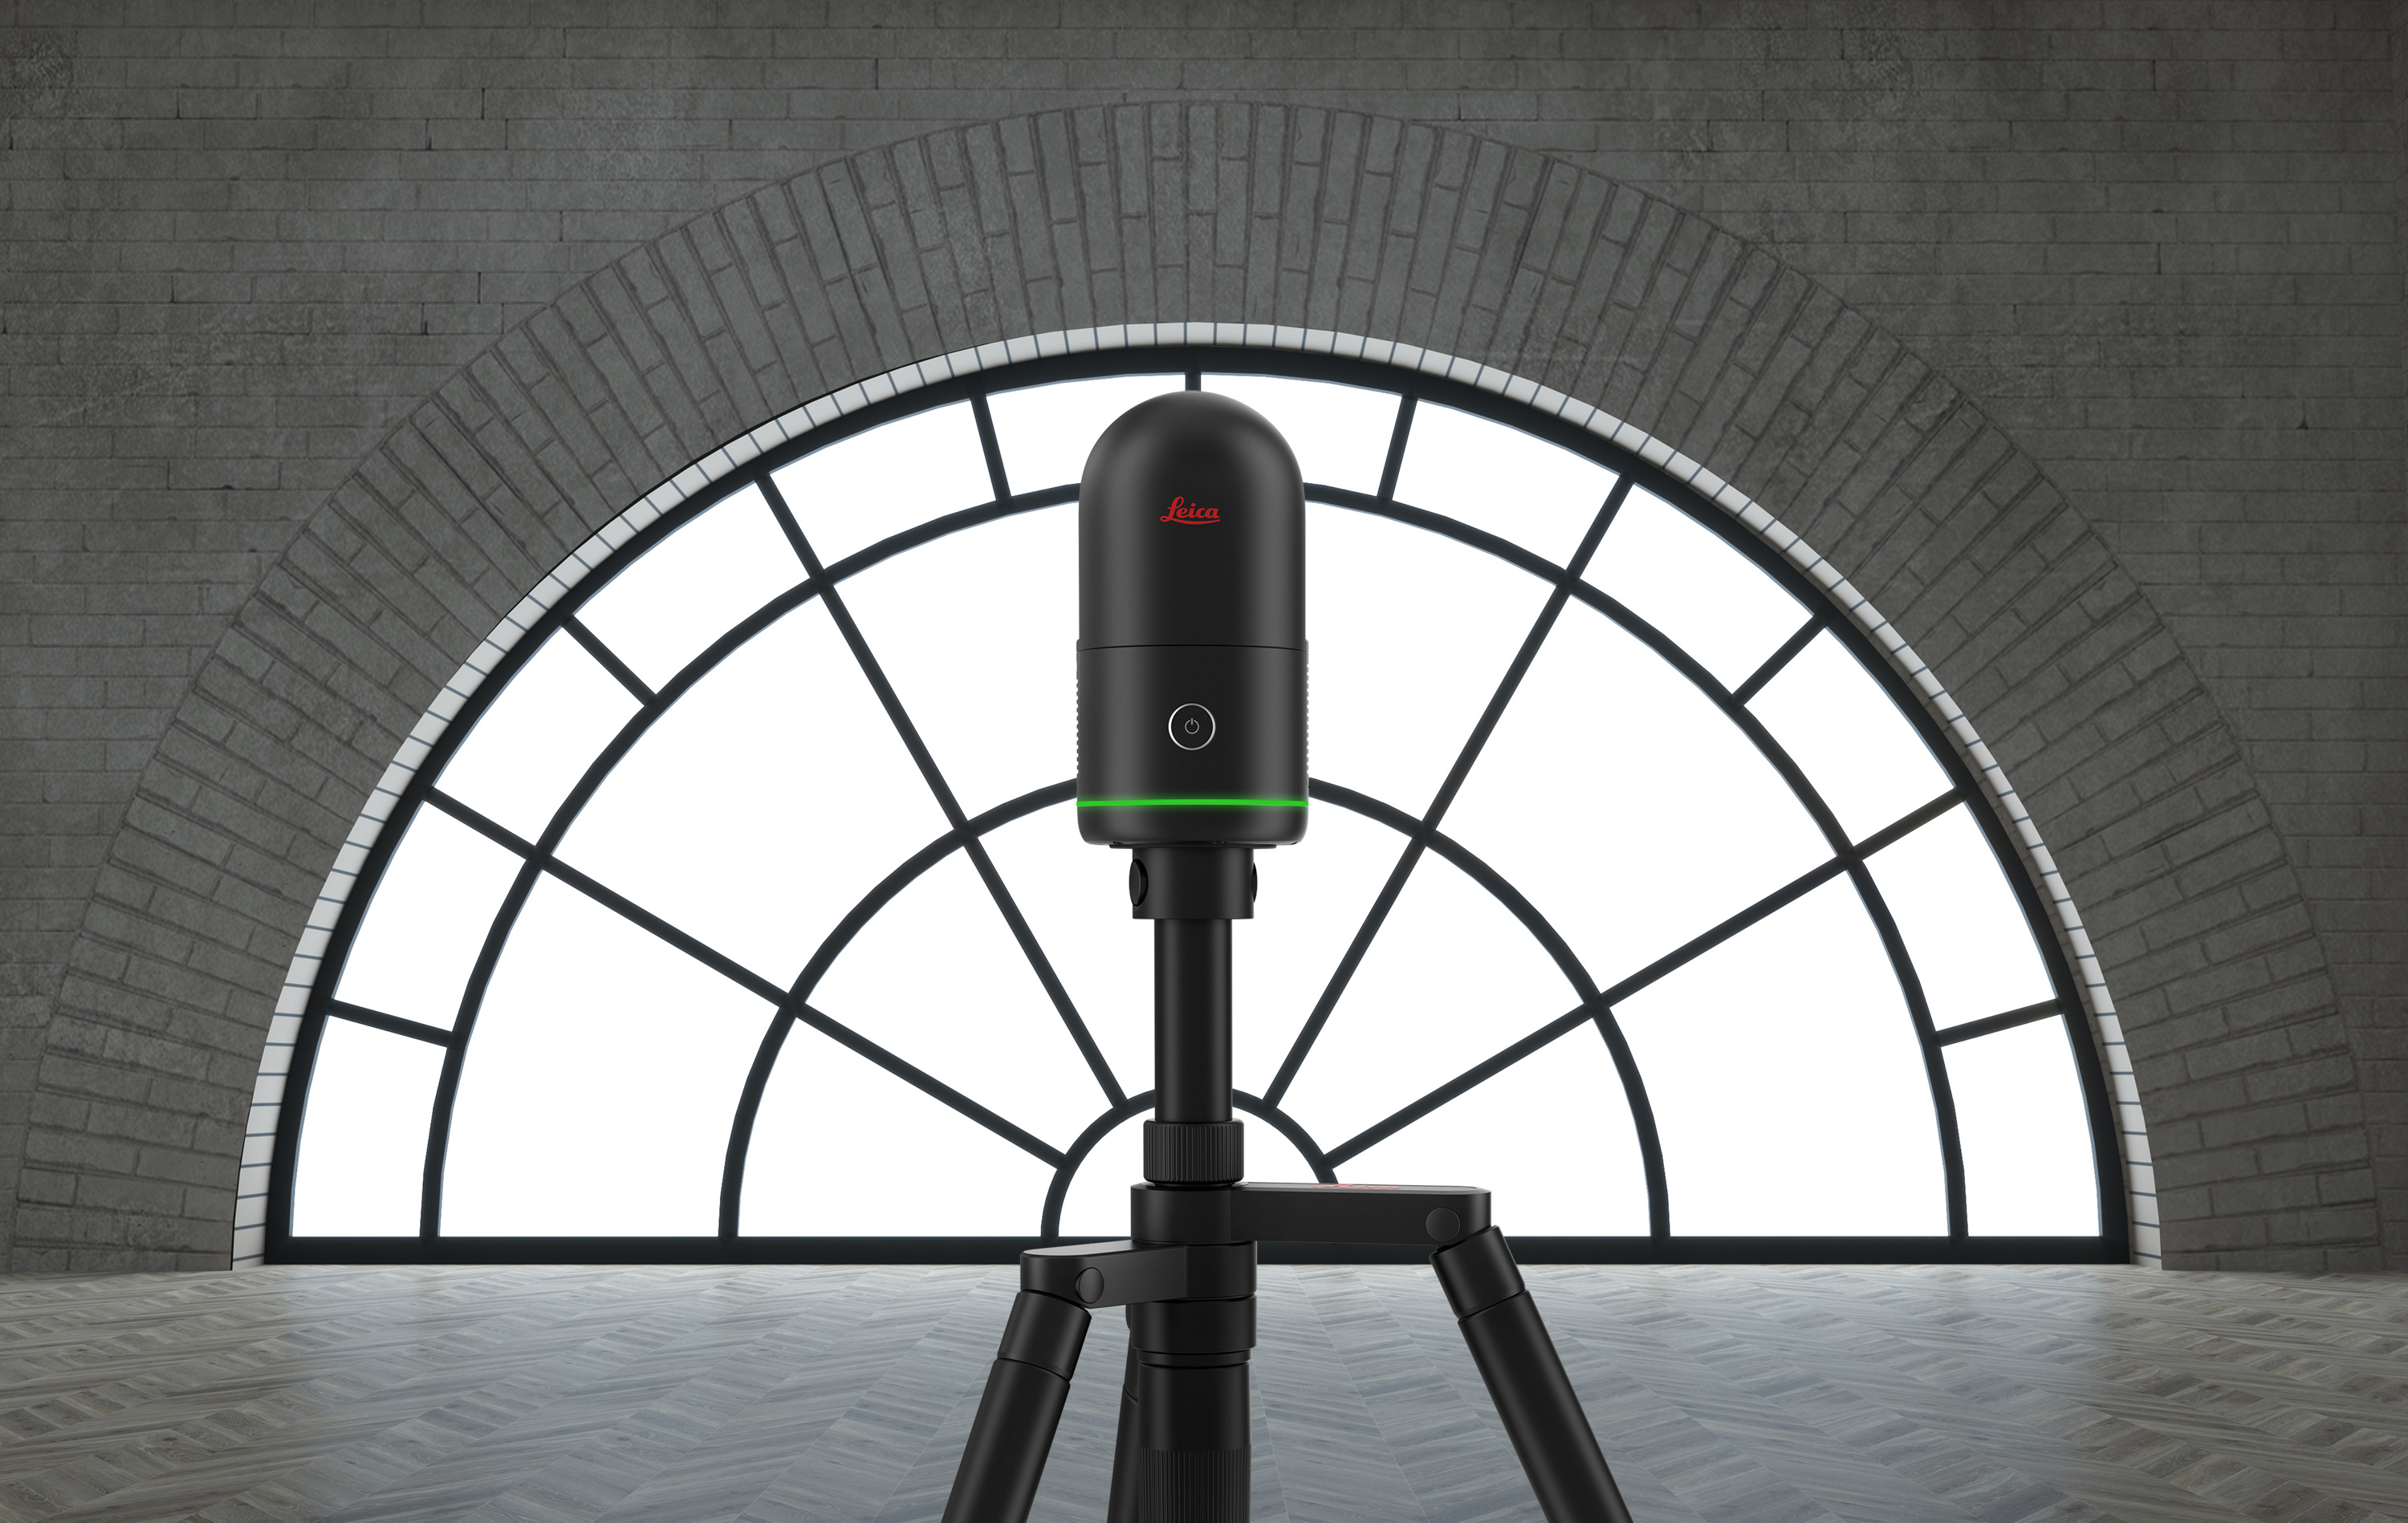 Hexagon révolutionne la capture de la réalité avec son scanner laser de nouvelle génération, le Leica BLK360 ultra-rapide